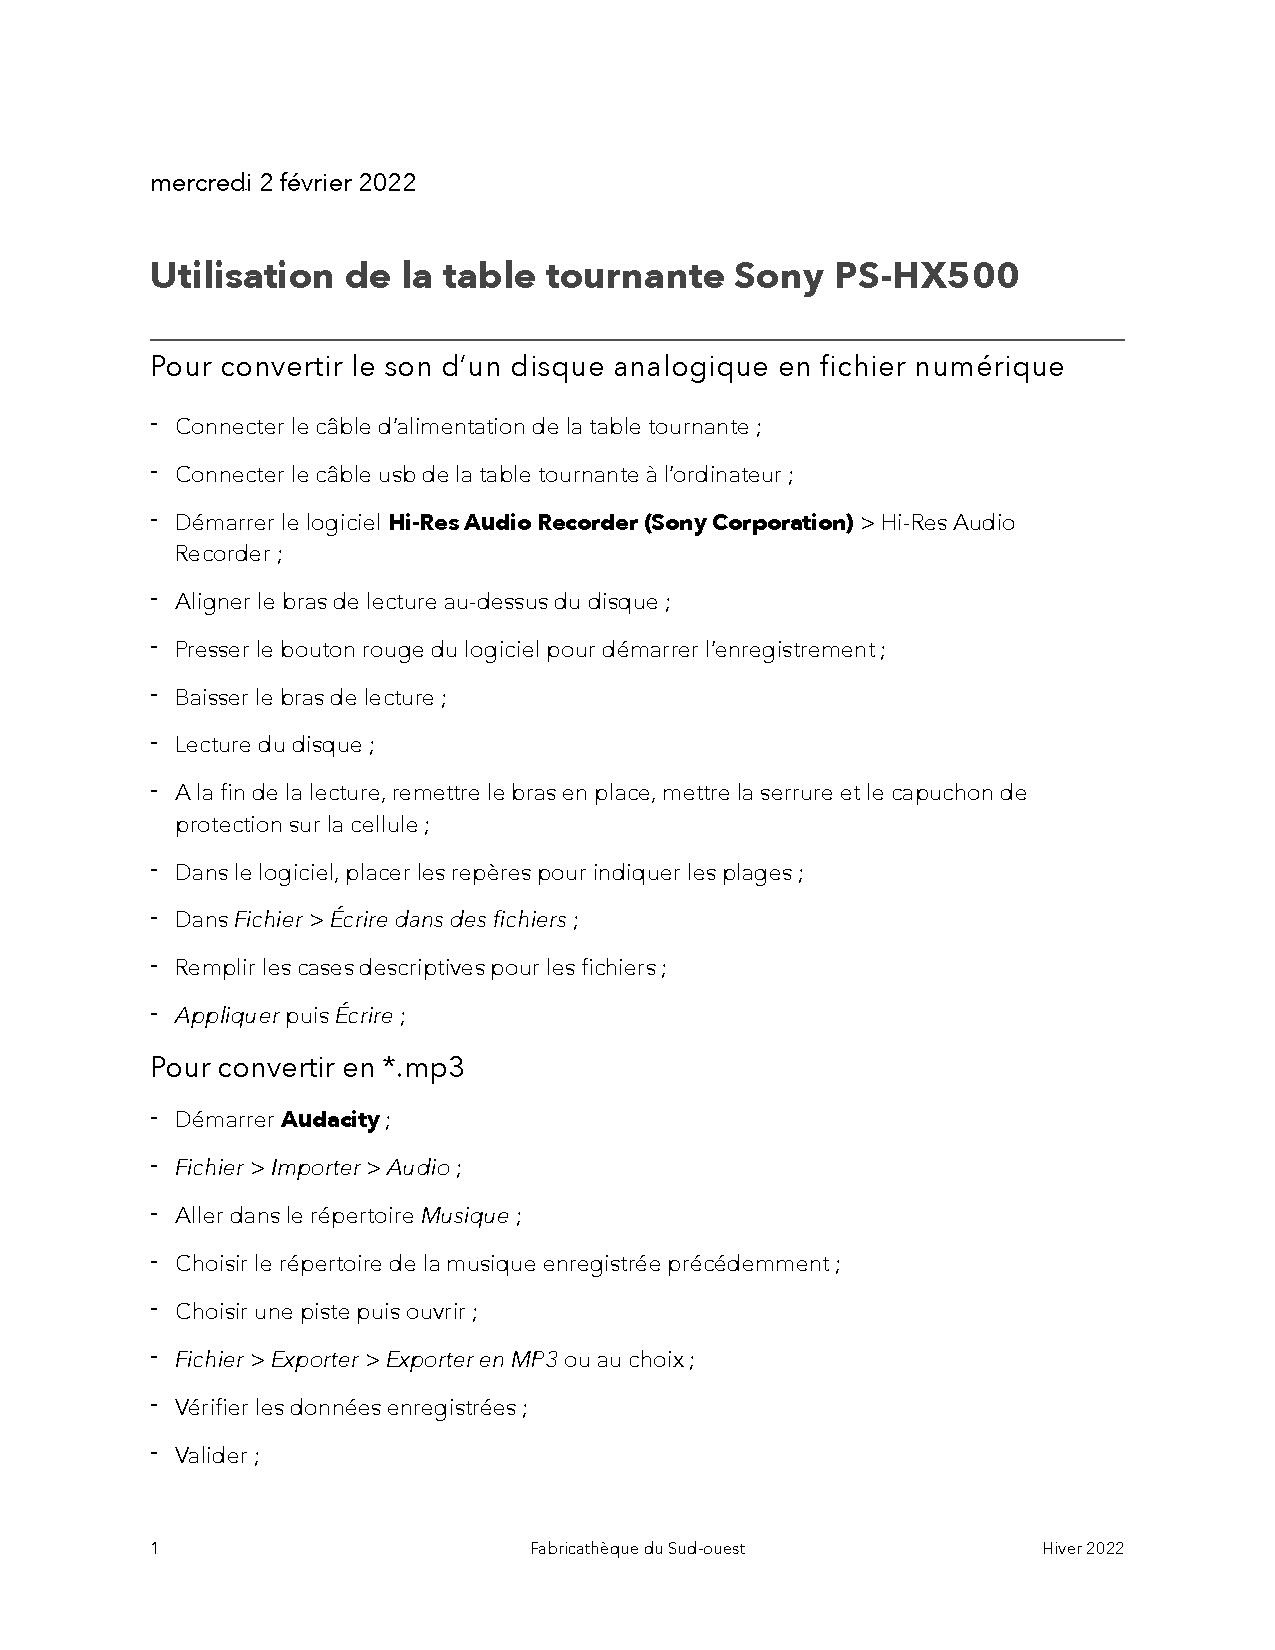 Guide utilisation Sony PS-HX500 par Fabricathèque du Sud-Ouest.pdf